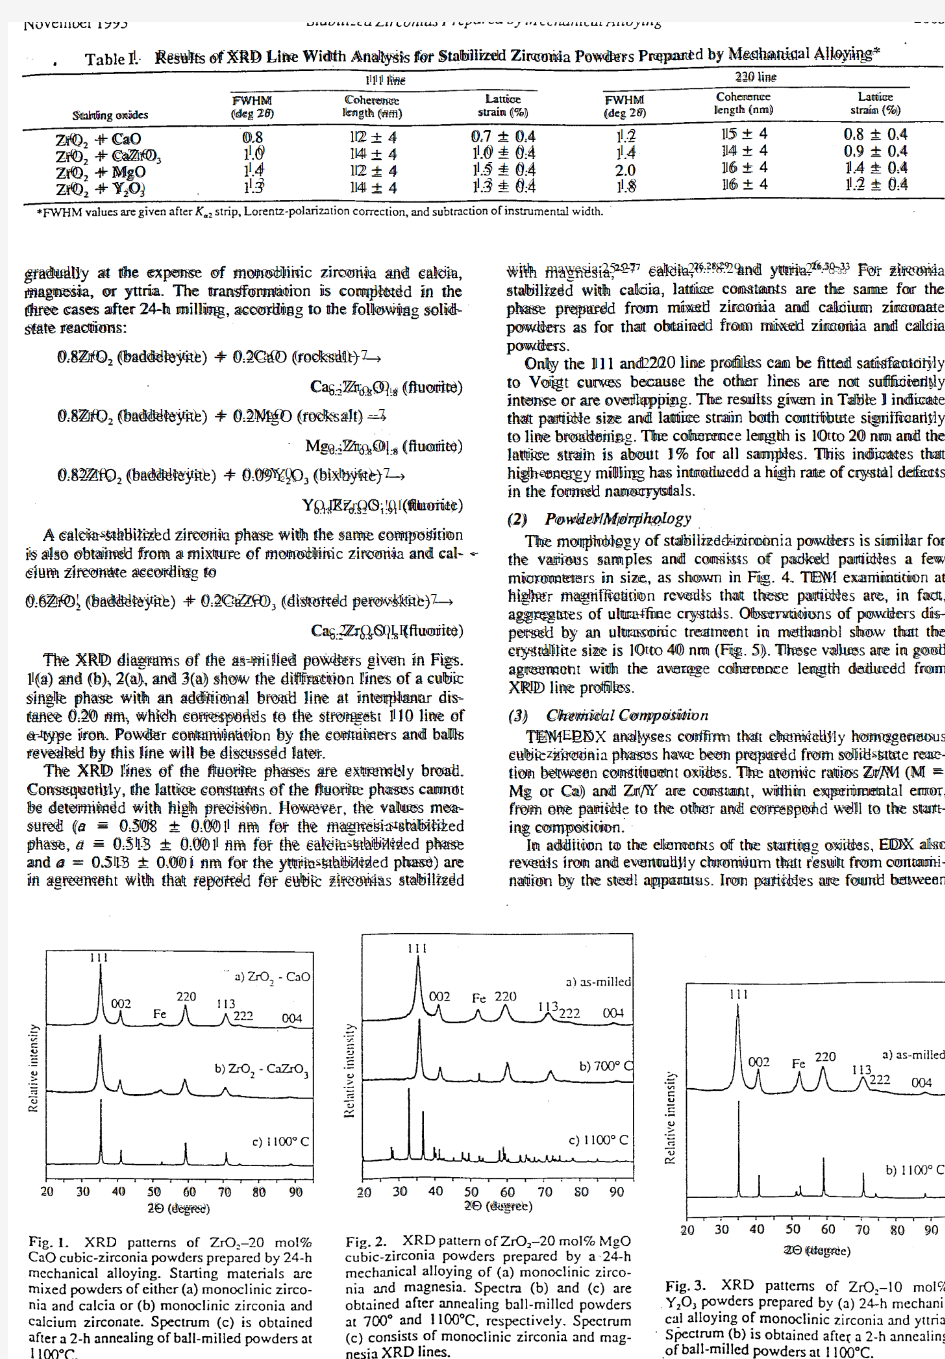 A22-Oxides-MA-JAmerCerSoc-76(11)(1993)-pp2884-2888